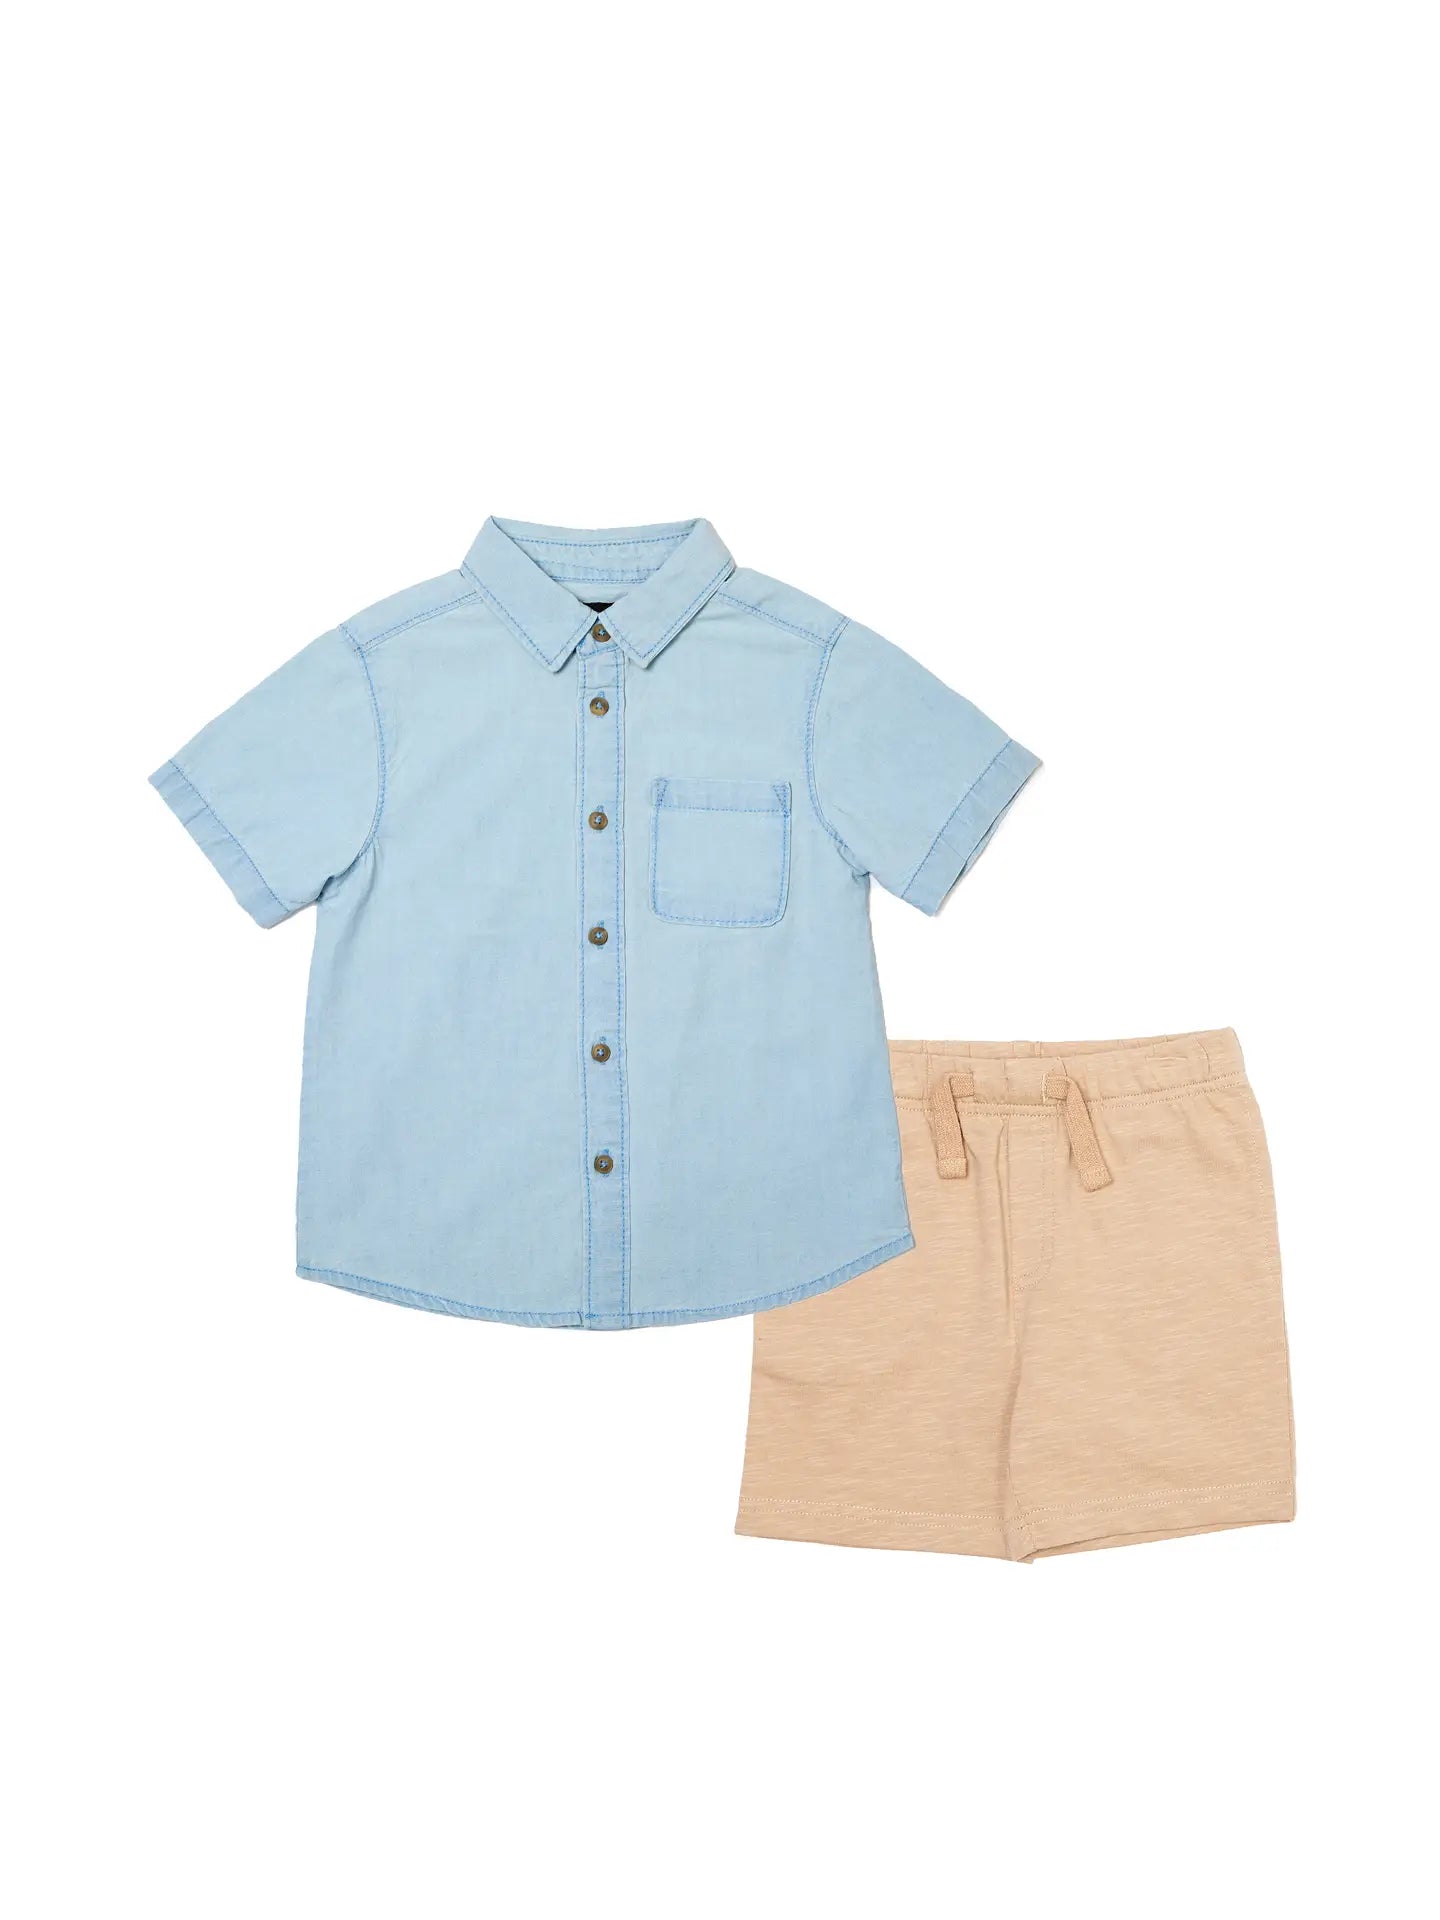 Light blue button up shirt and Knit shorts set